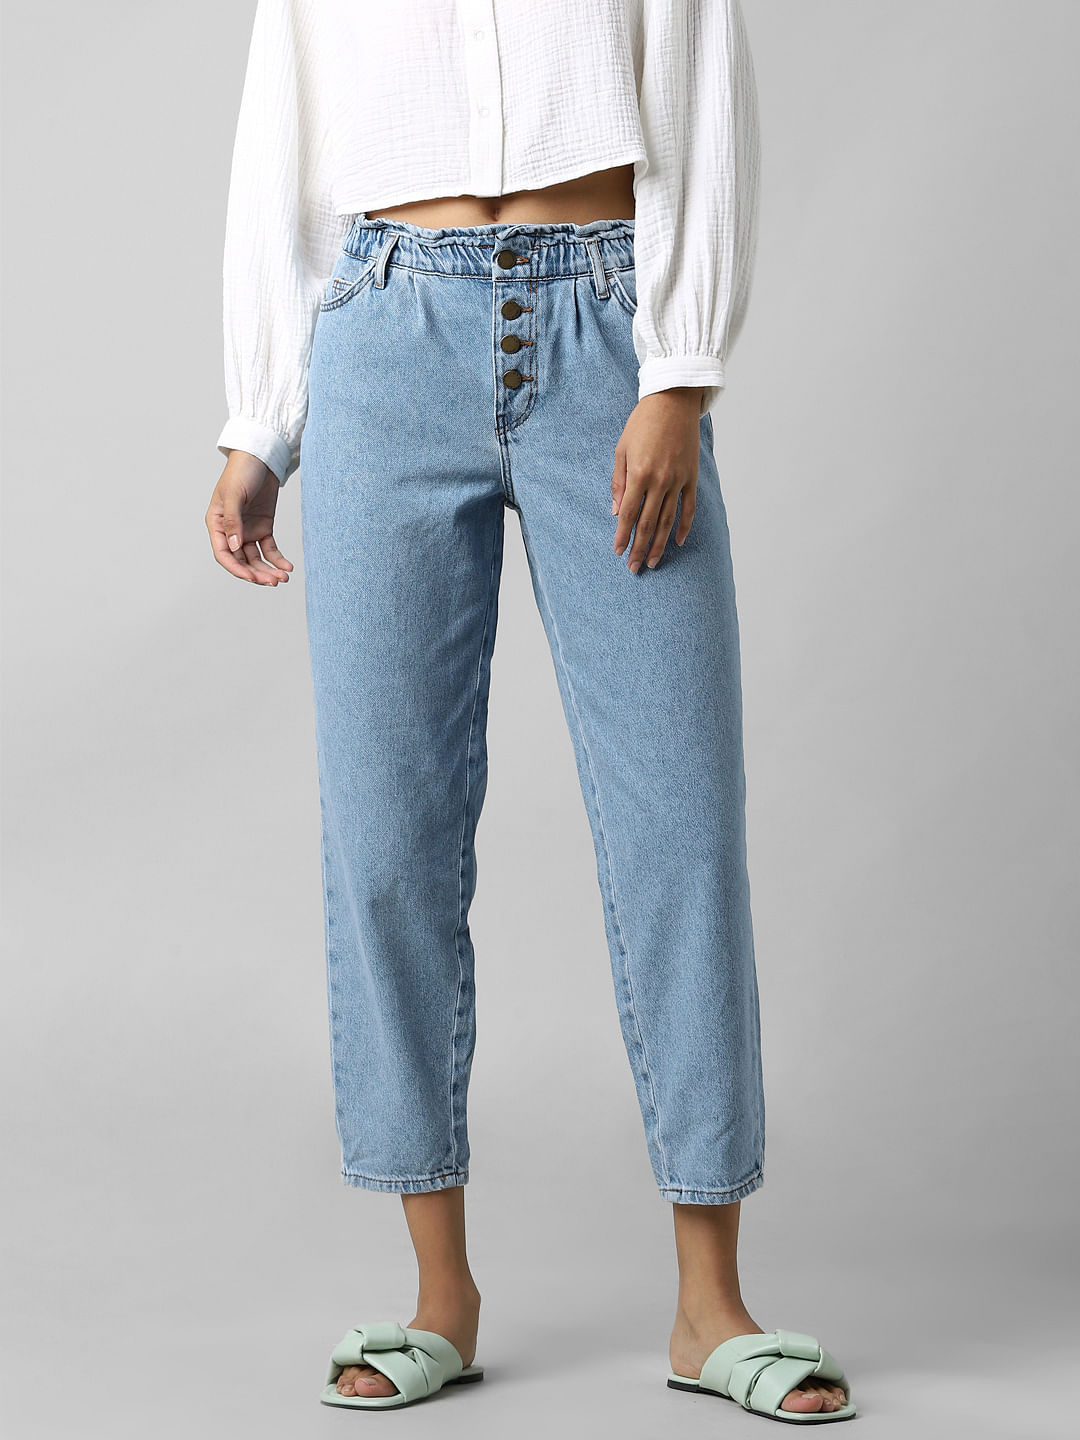 パンツ新品《 VETEMENTS 》Plain Baggy Jeans 28 - デニム/ジーンズ